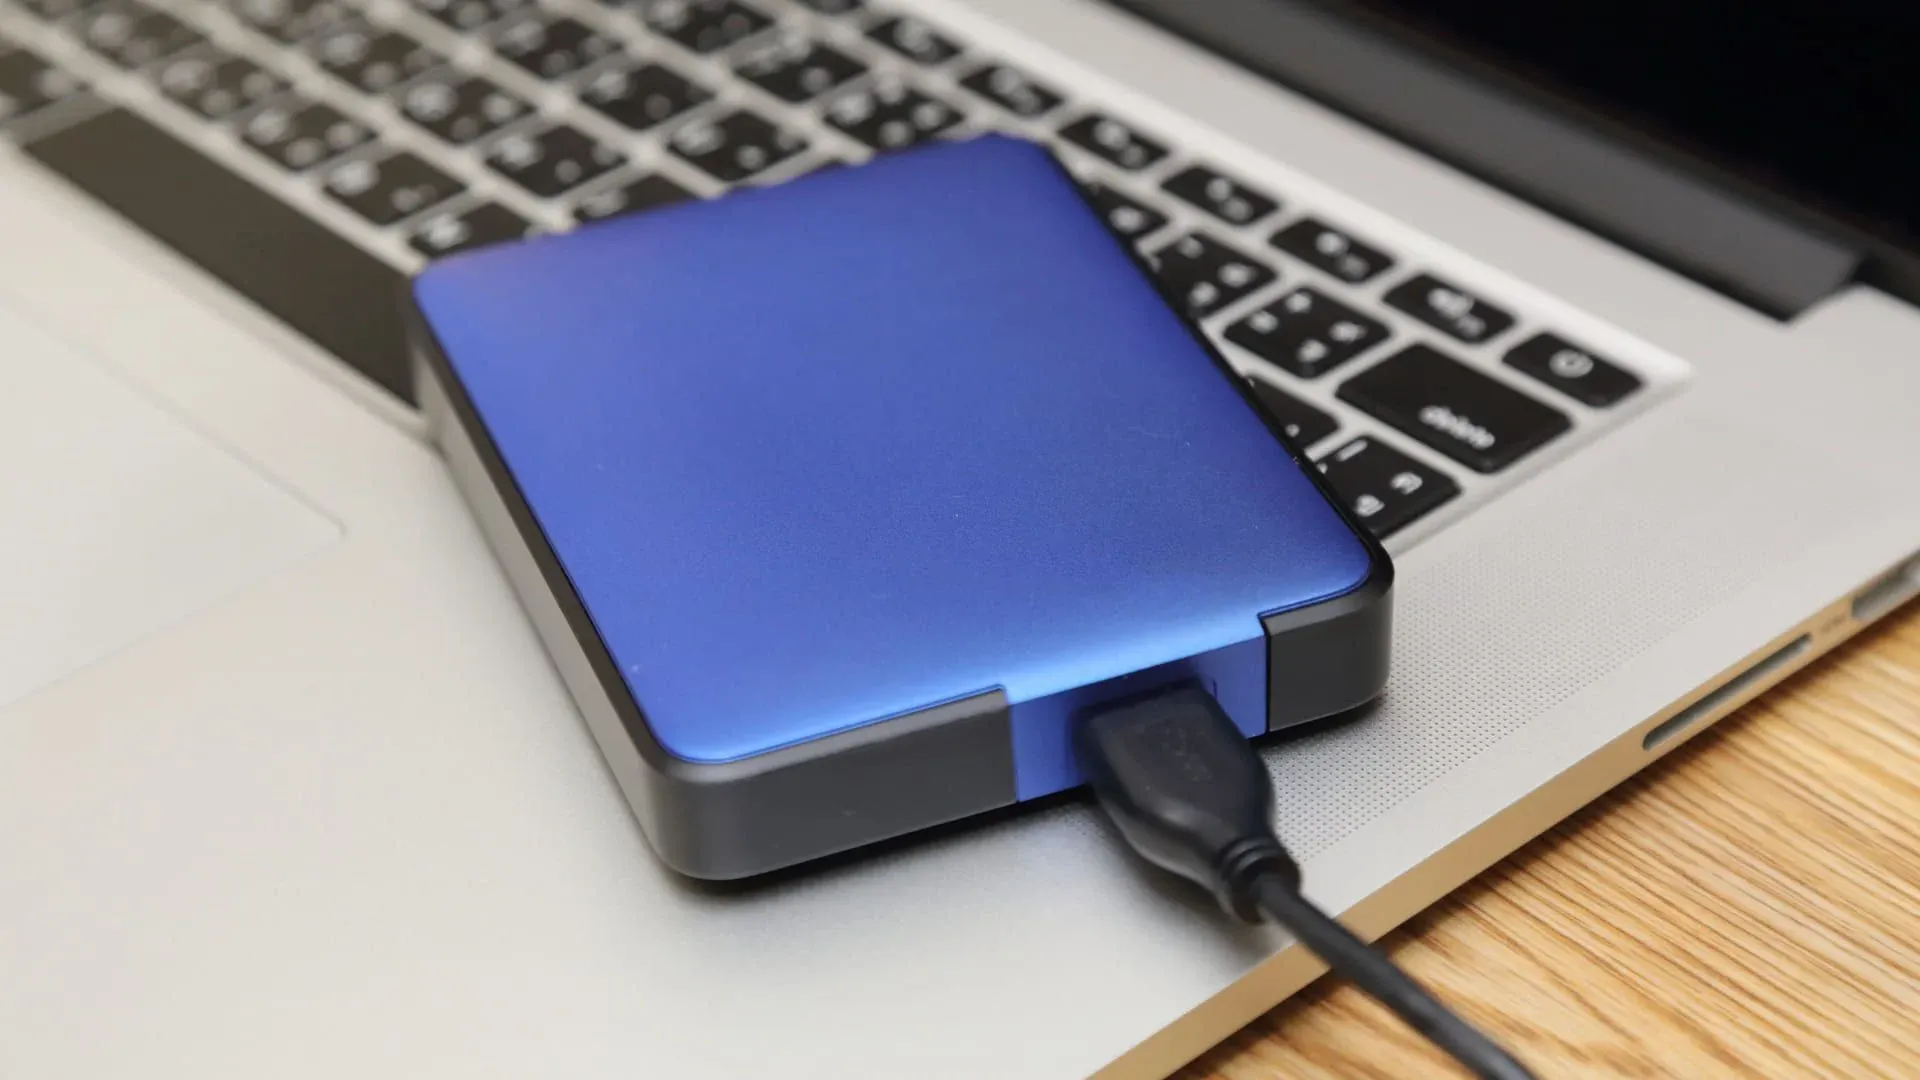 HD externo azul conectado por USB e em cima de notebook prata